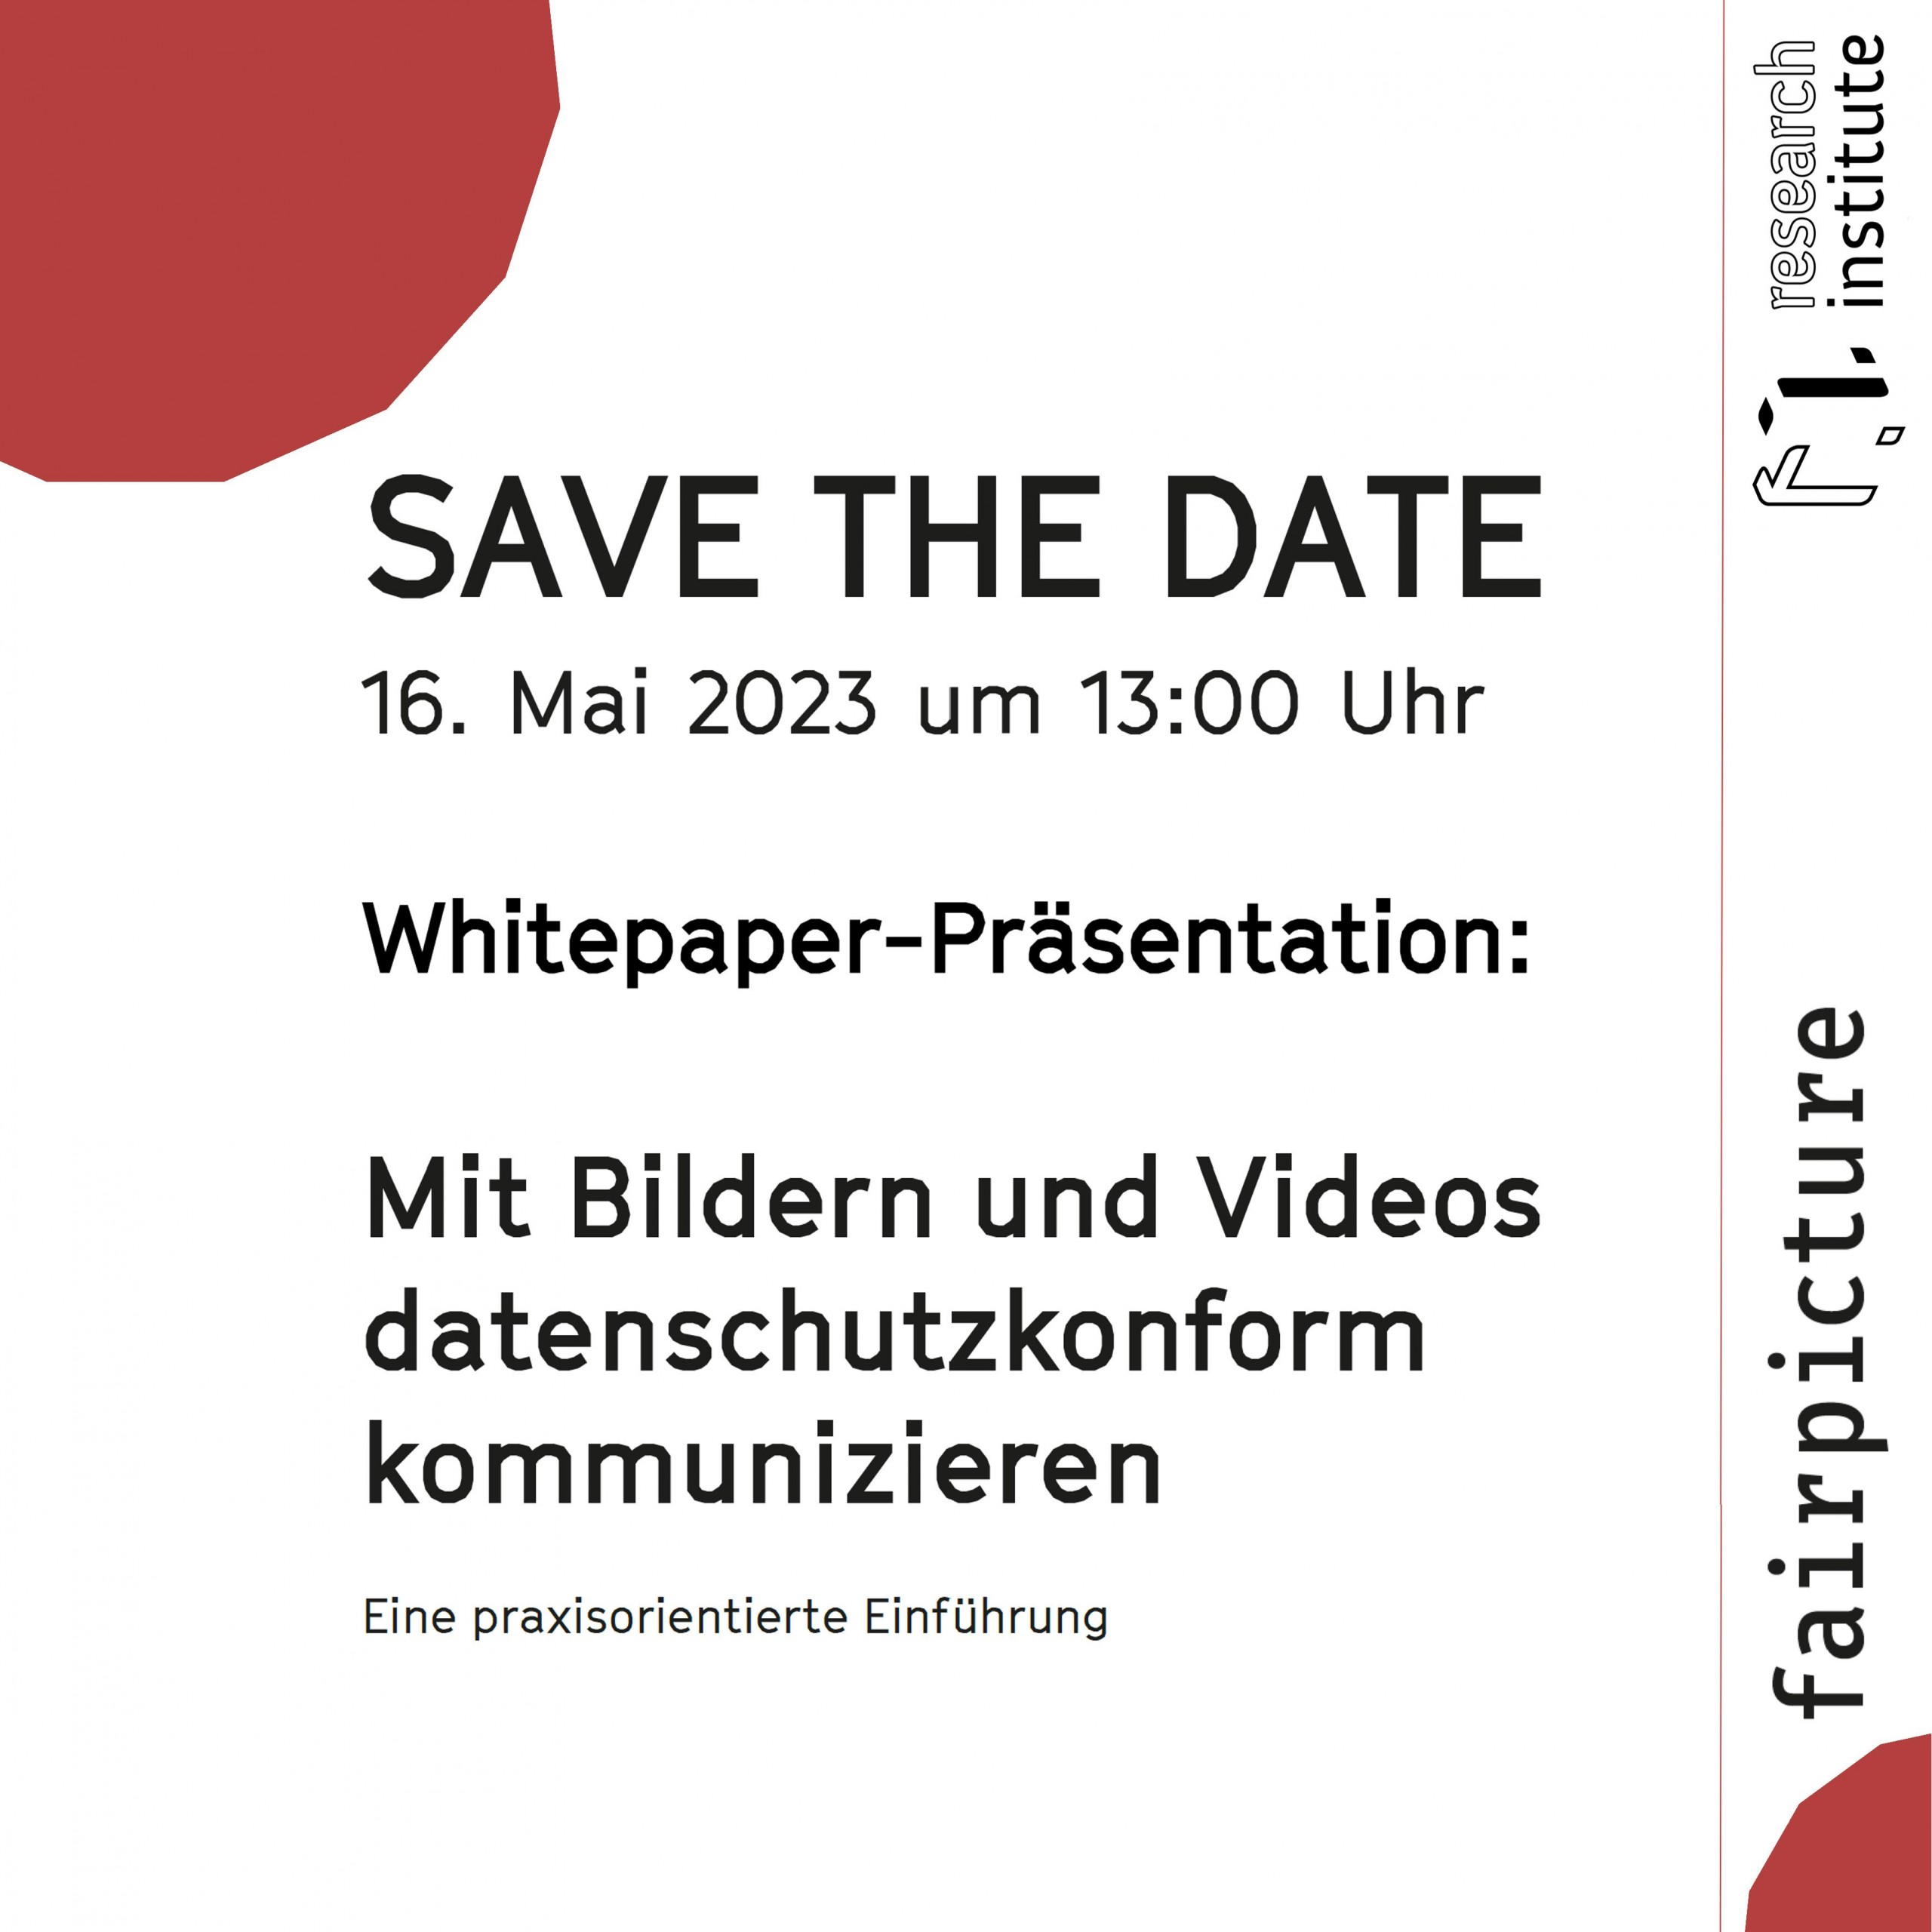 SAVE THE DATE 16. Mai 2023 um 13:00 Uhr Whitepaper-Präsentation: Mit Bildern und Videos datenschutzkonform kommunizieren Eine praxisorientierte Einführung